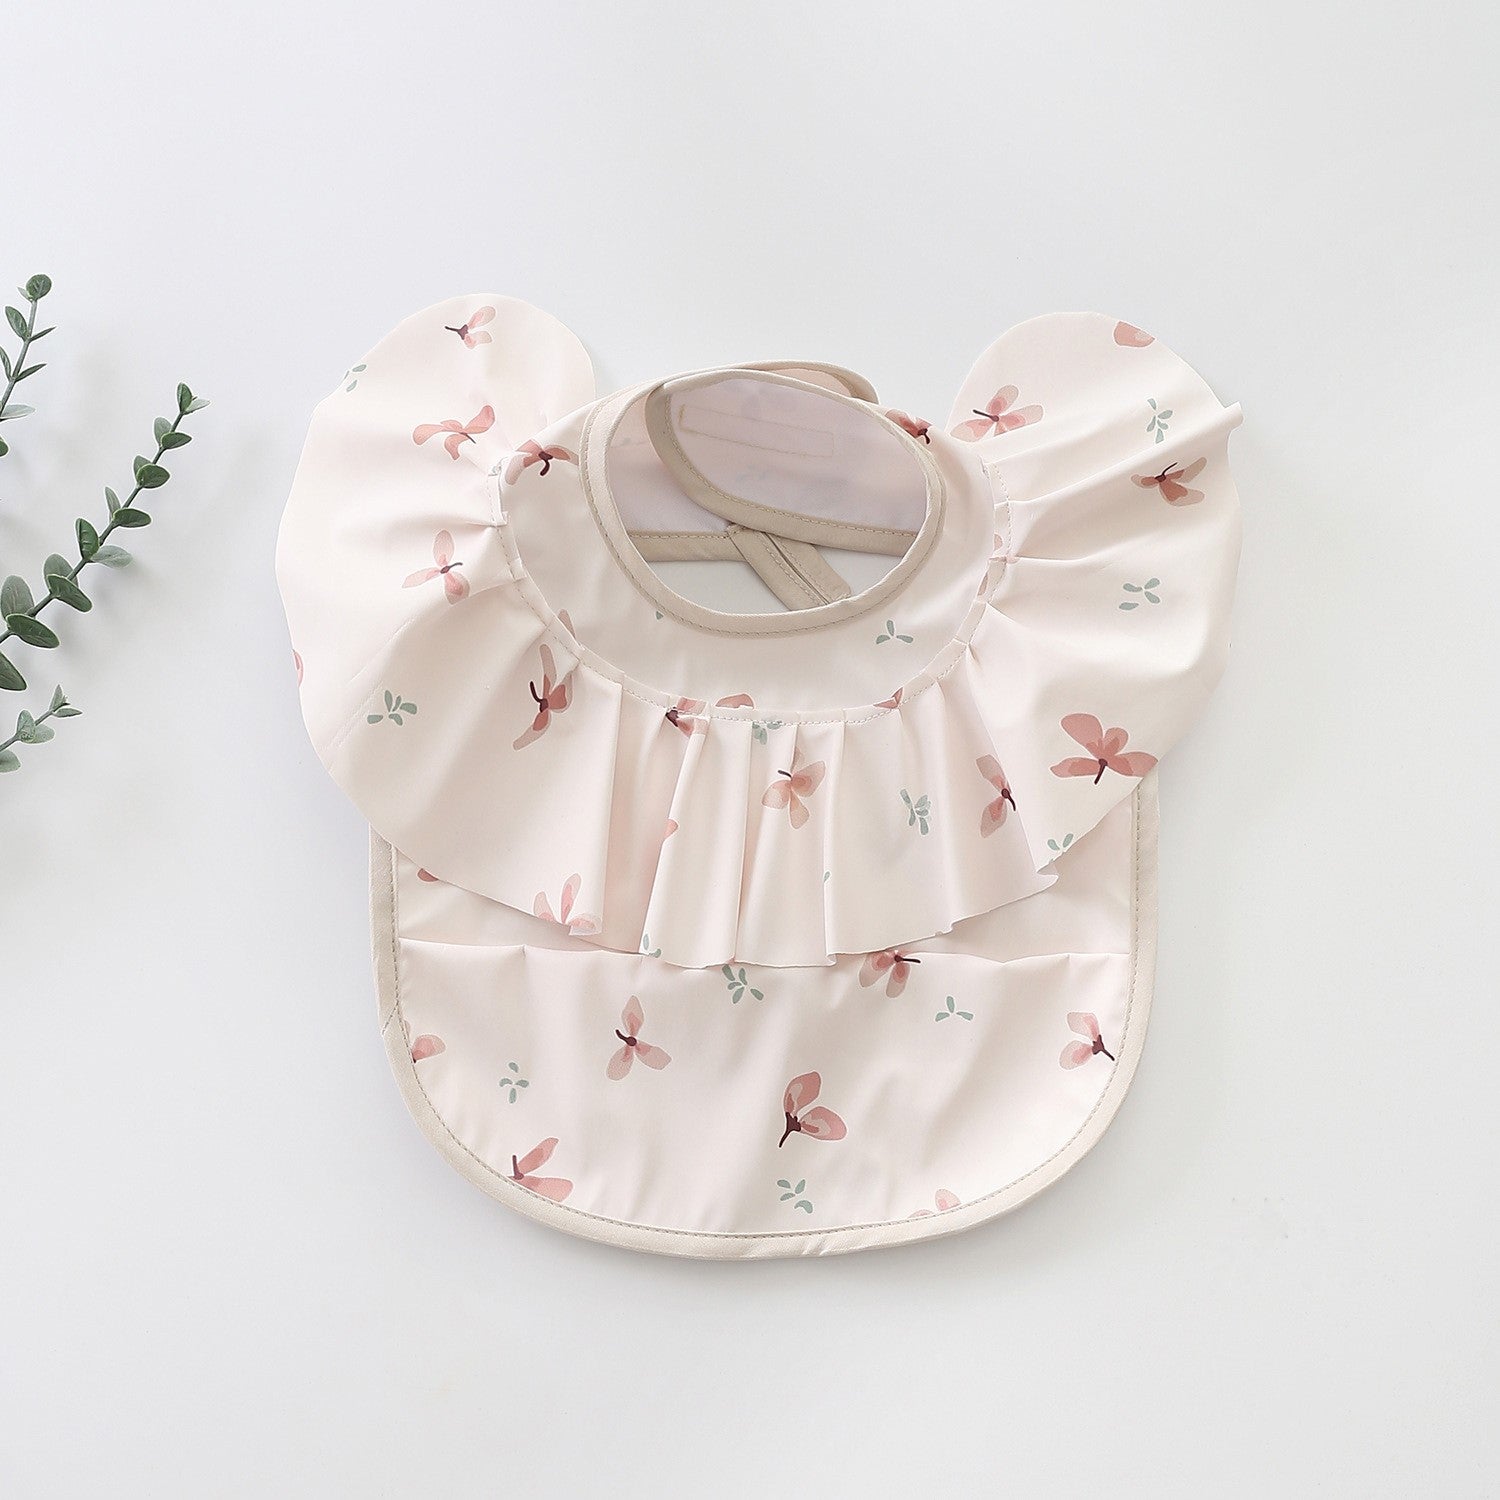 Bavetă impermeabilă pentru fetițe, Model 3 – Pink Flowers, 12 luni+, poliester